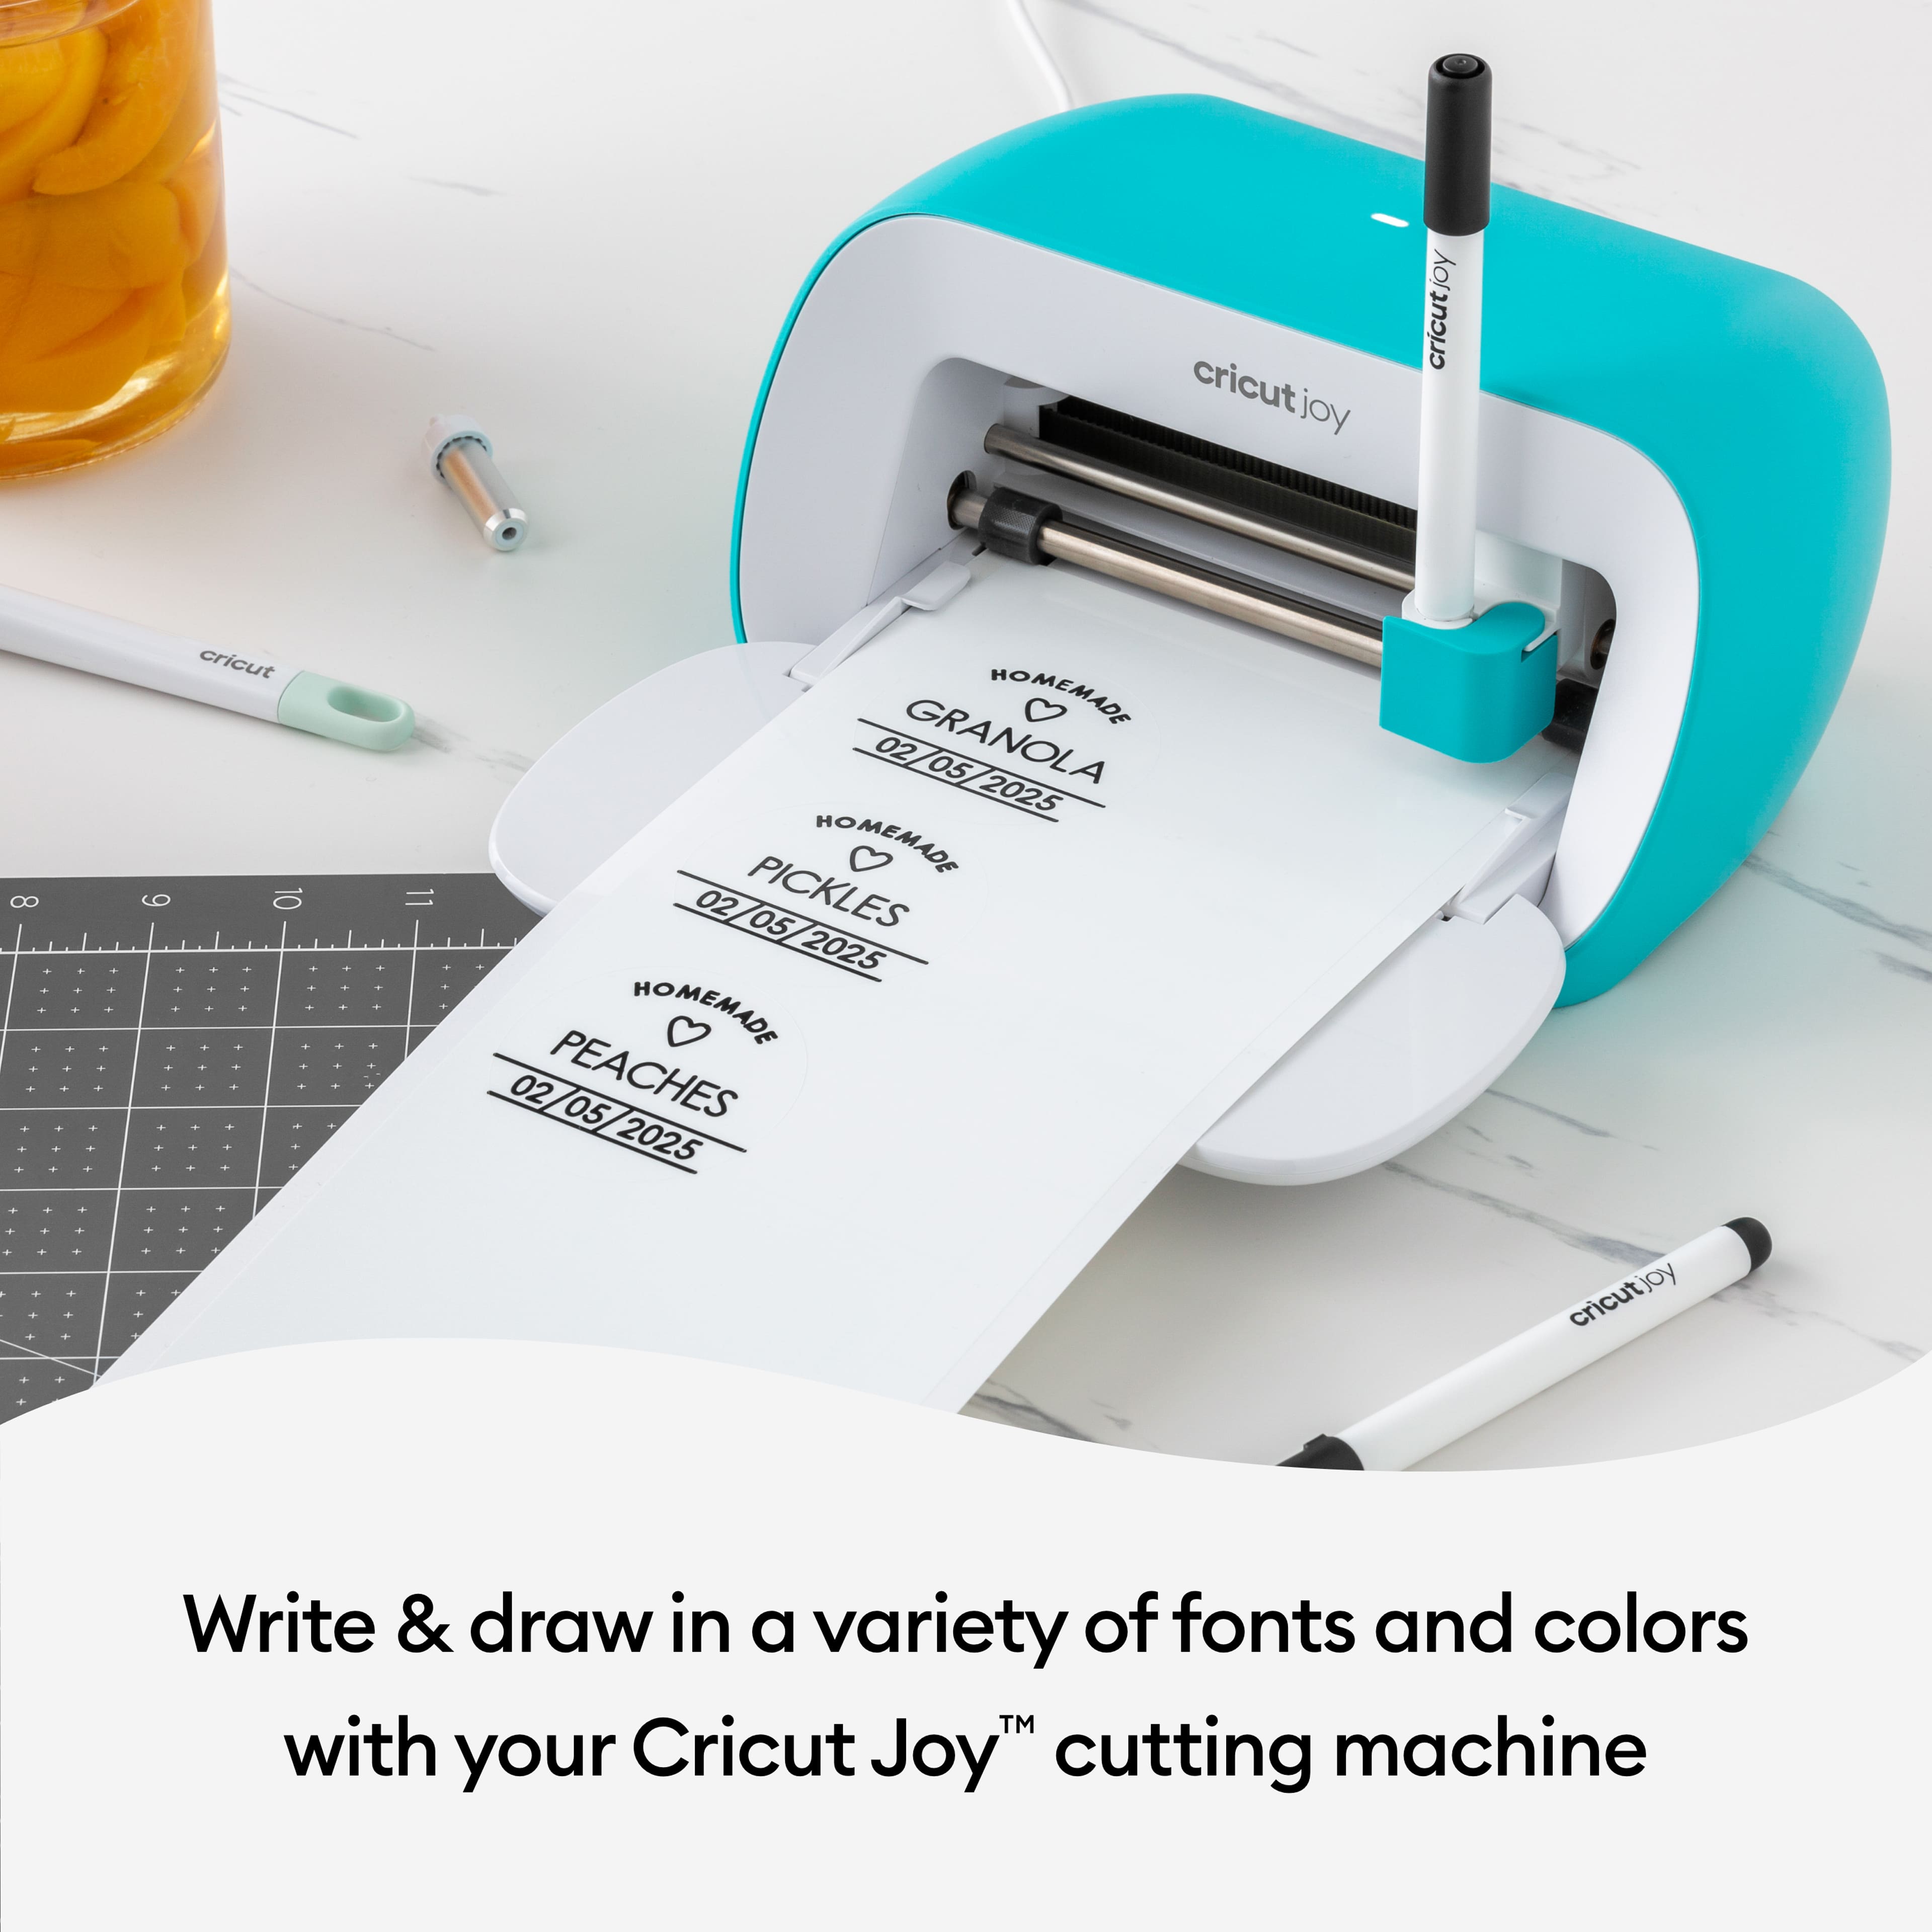 Cricut Joy&#x2122; 3 Color Permanent Metallic Marker Set